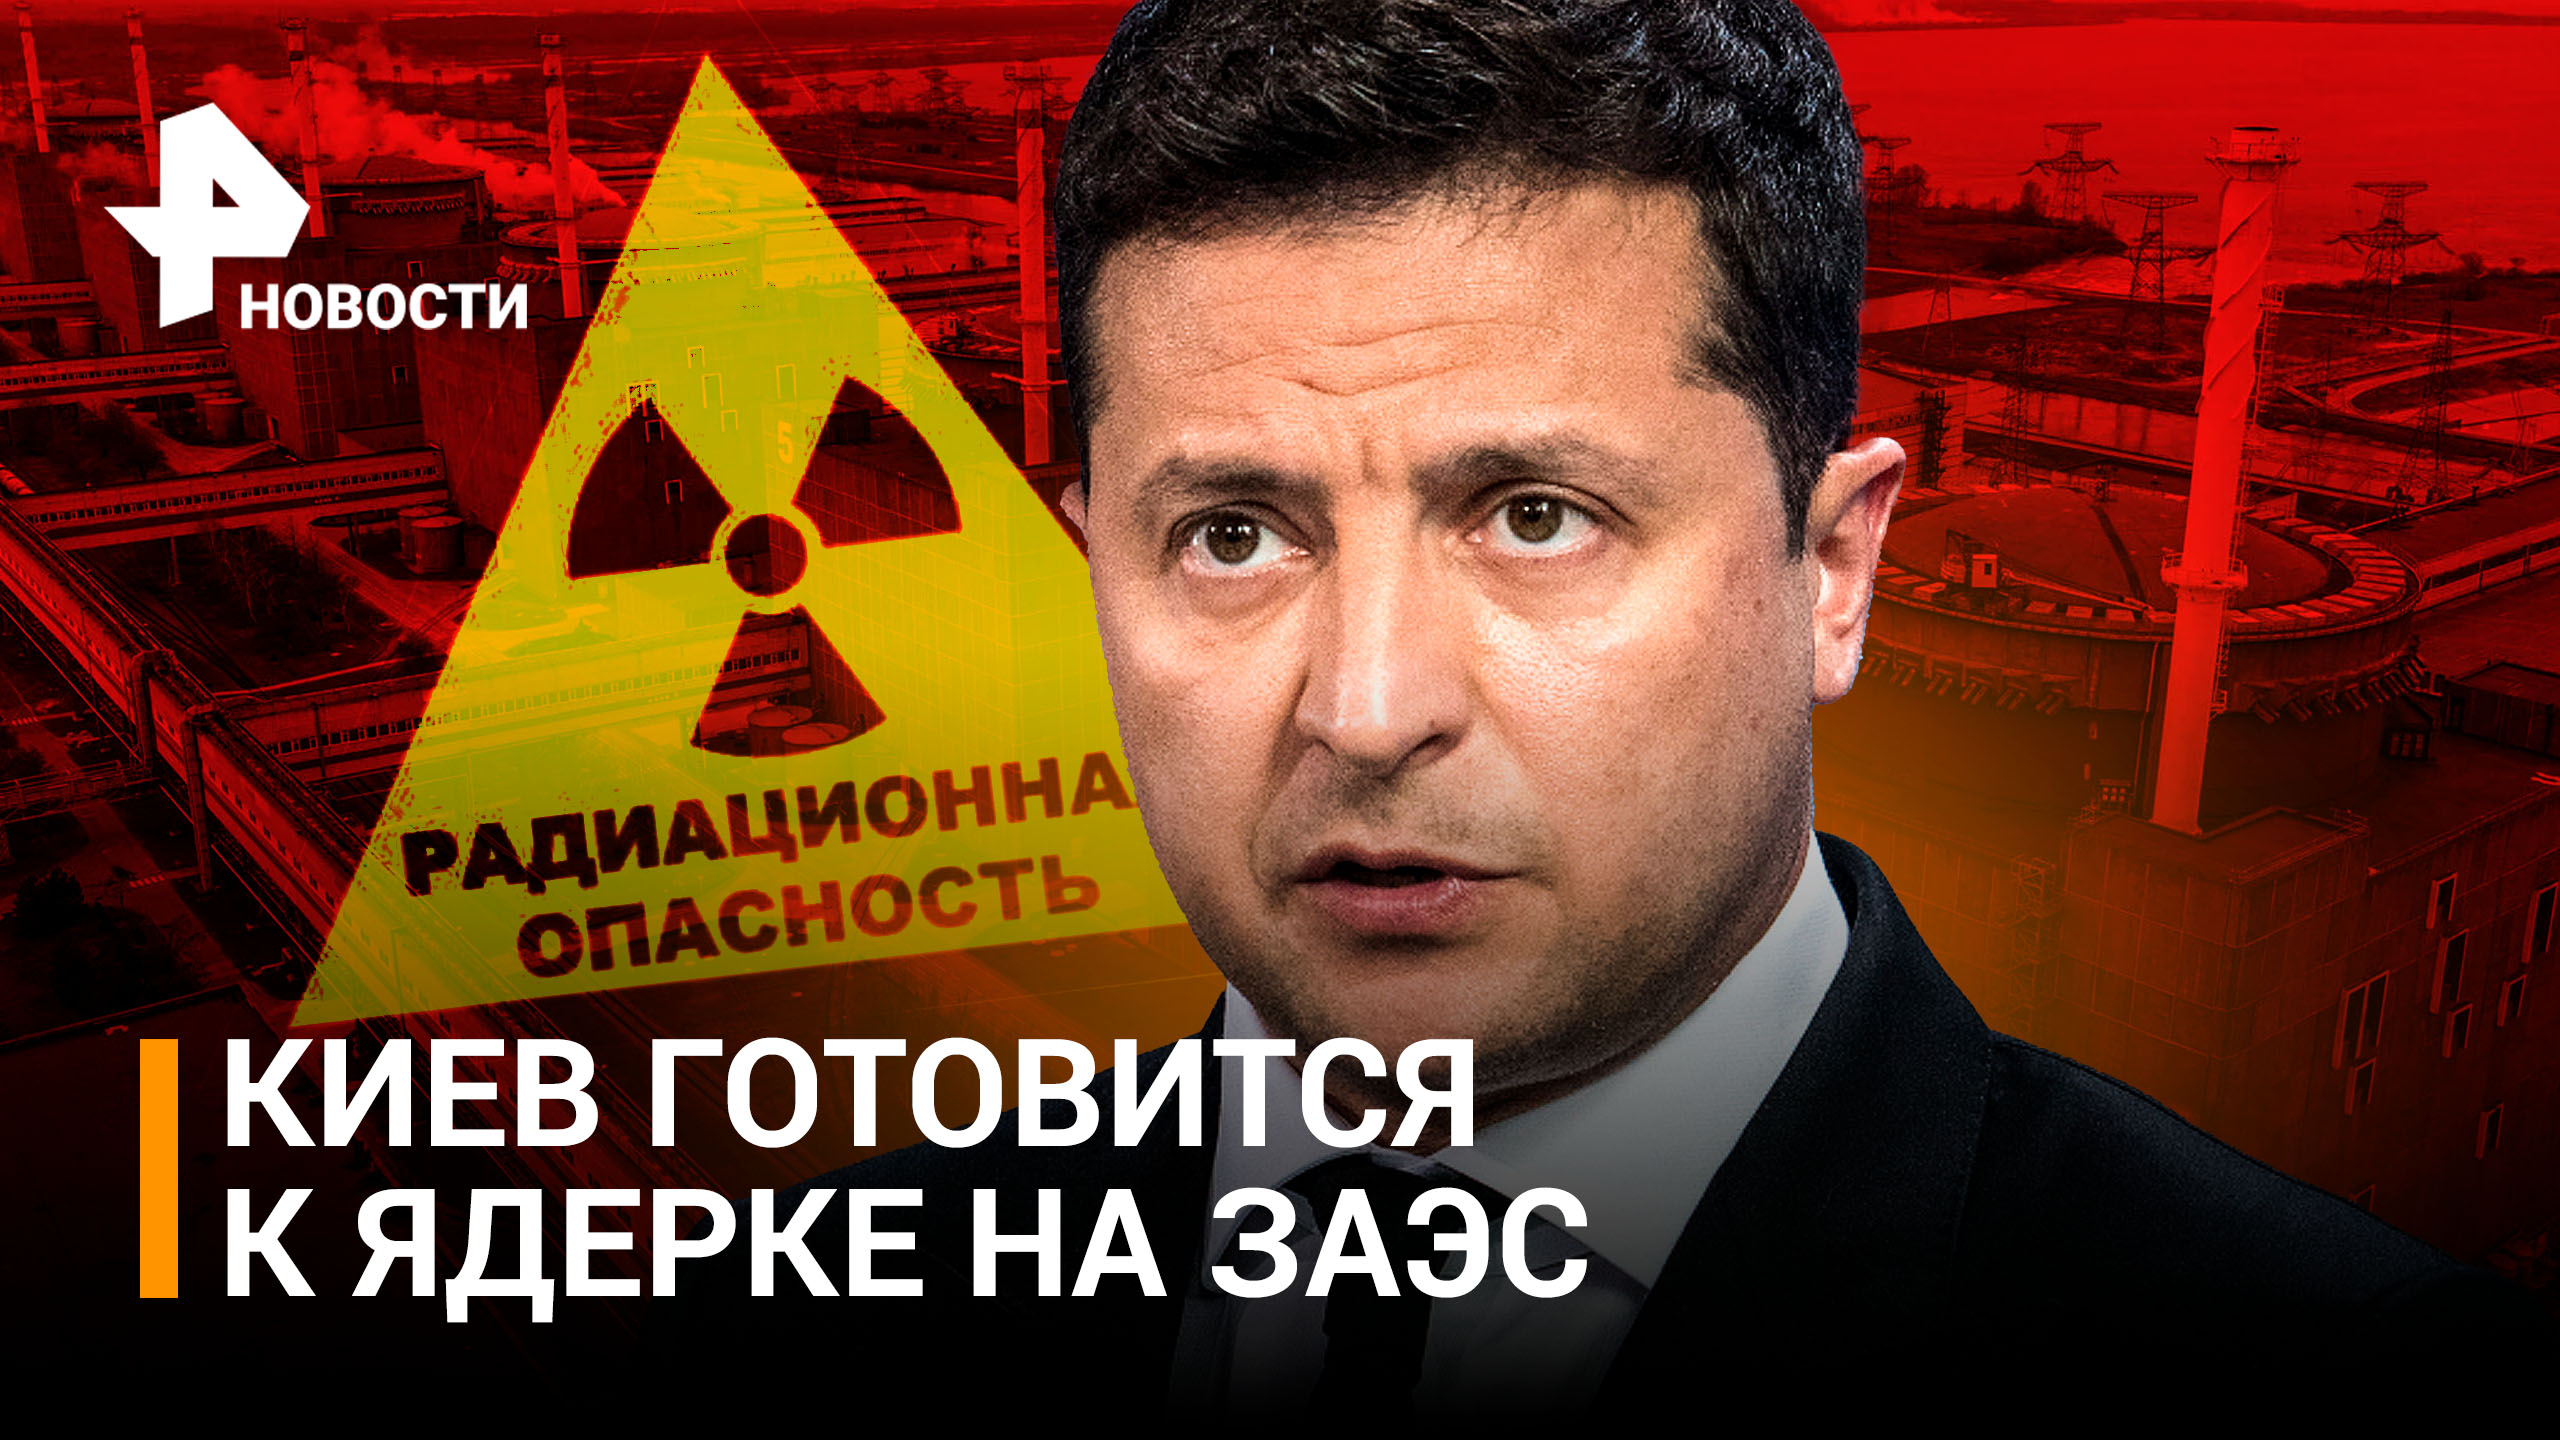 Ядерная провокация: киевляне скупают йод. Зеленский строит заговор вокруг ЗАЭС / РЕН Новости